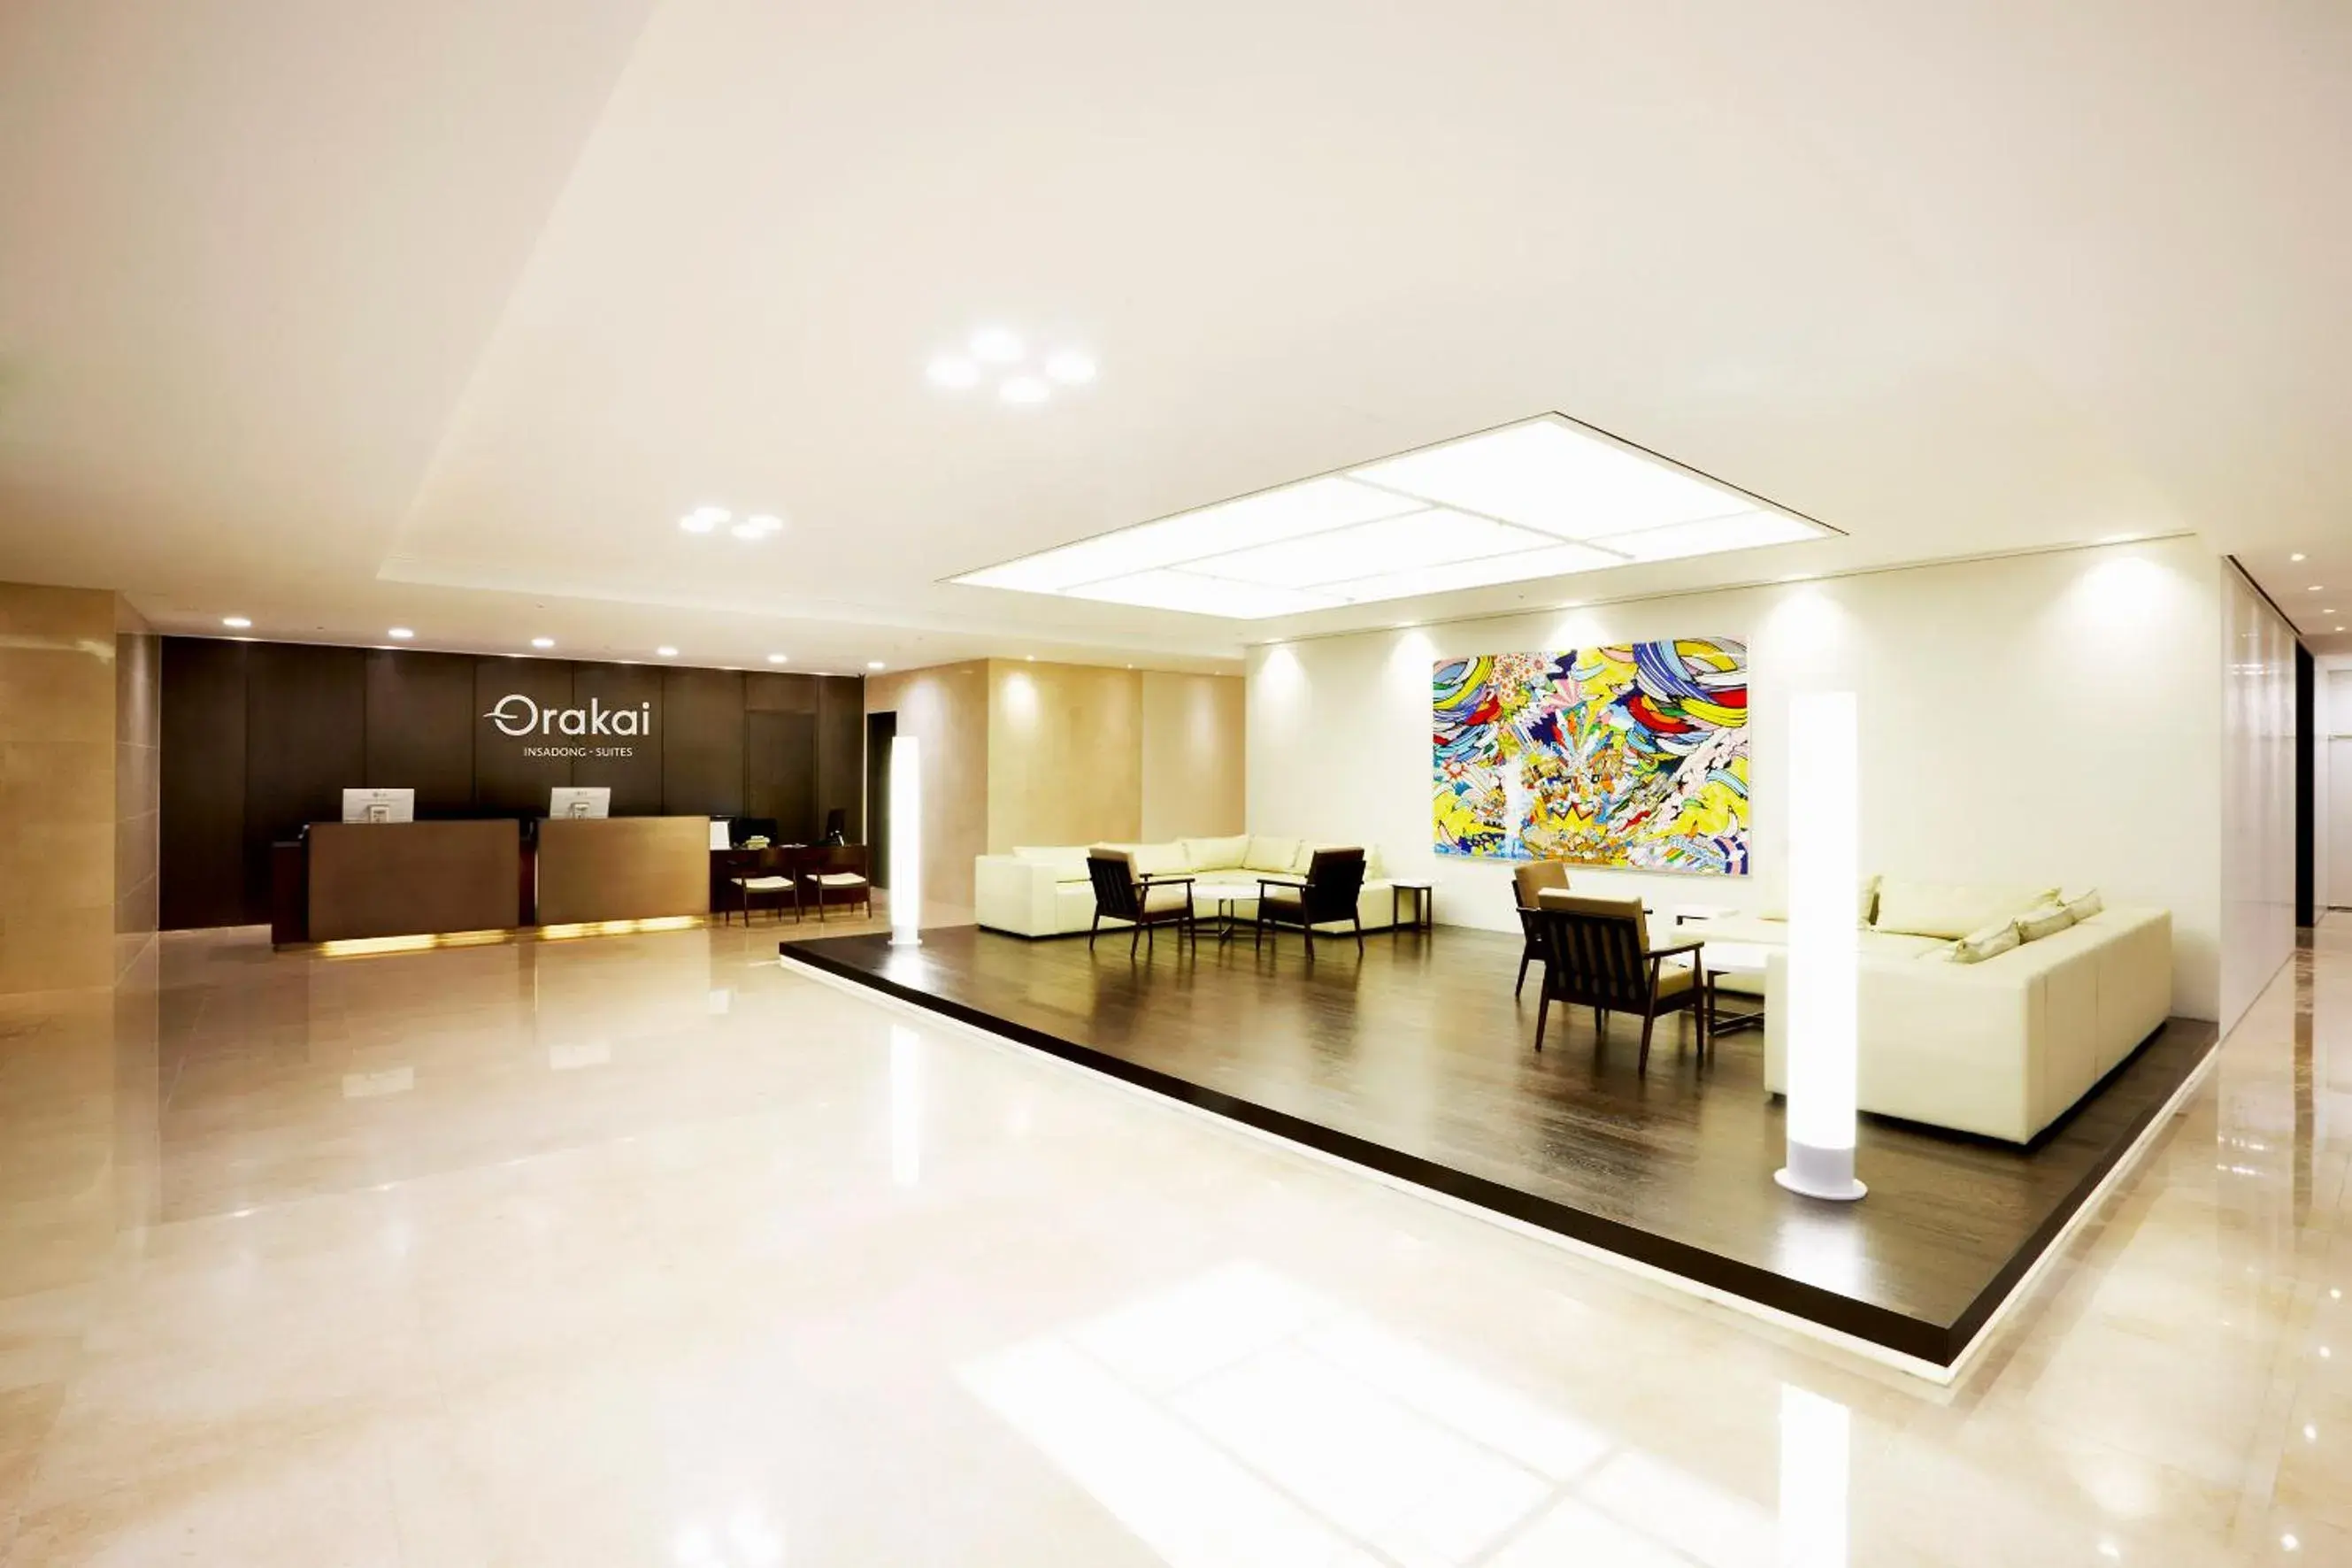 Lobby or reception in Orakai Insadong Suites